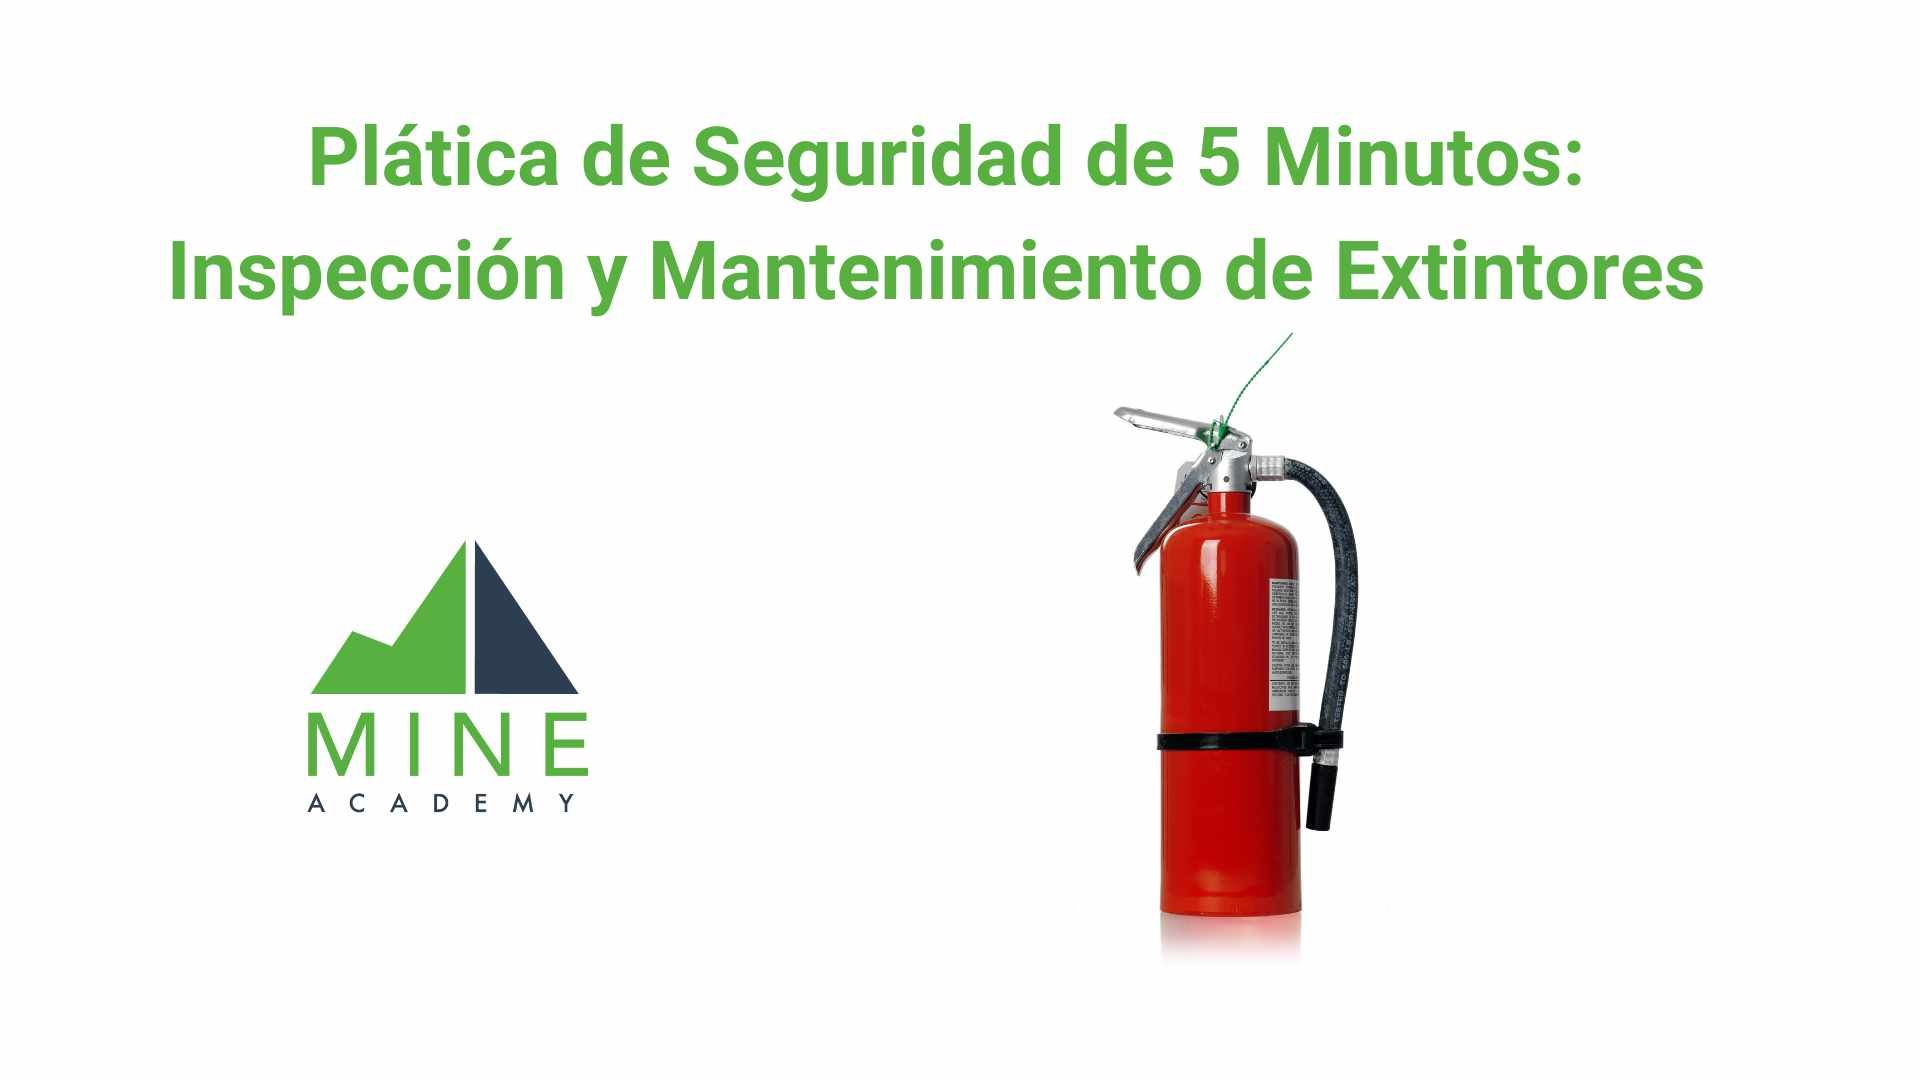 Platica de seguridad de 5 minutos: Inspección y Mantenimiento de Extintores